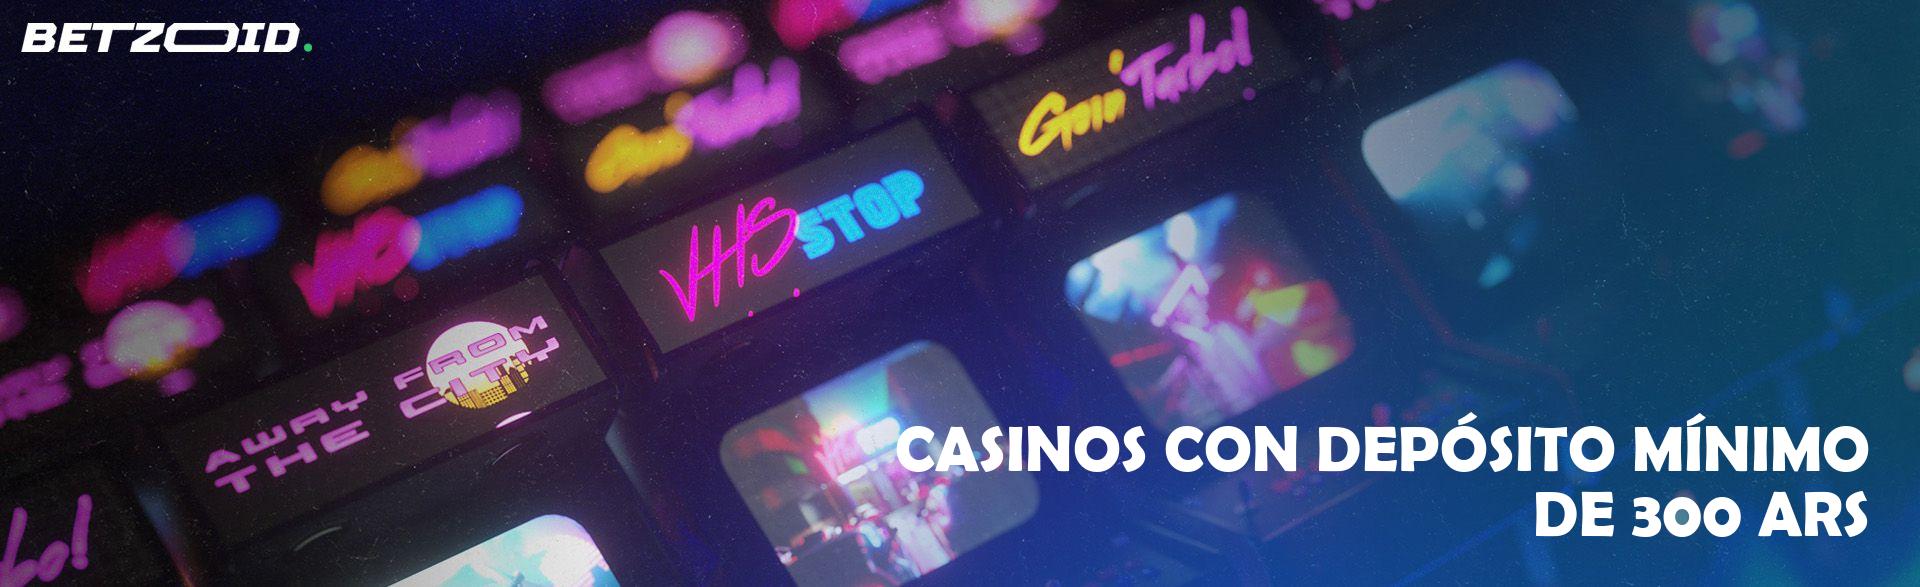 Casinos con Depósito Mínimo de 300 ARS.